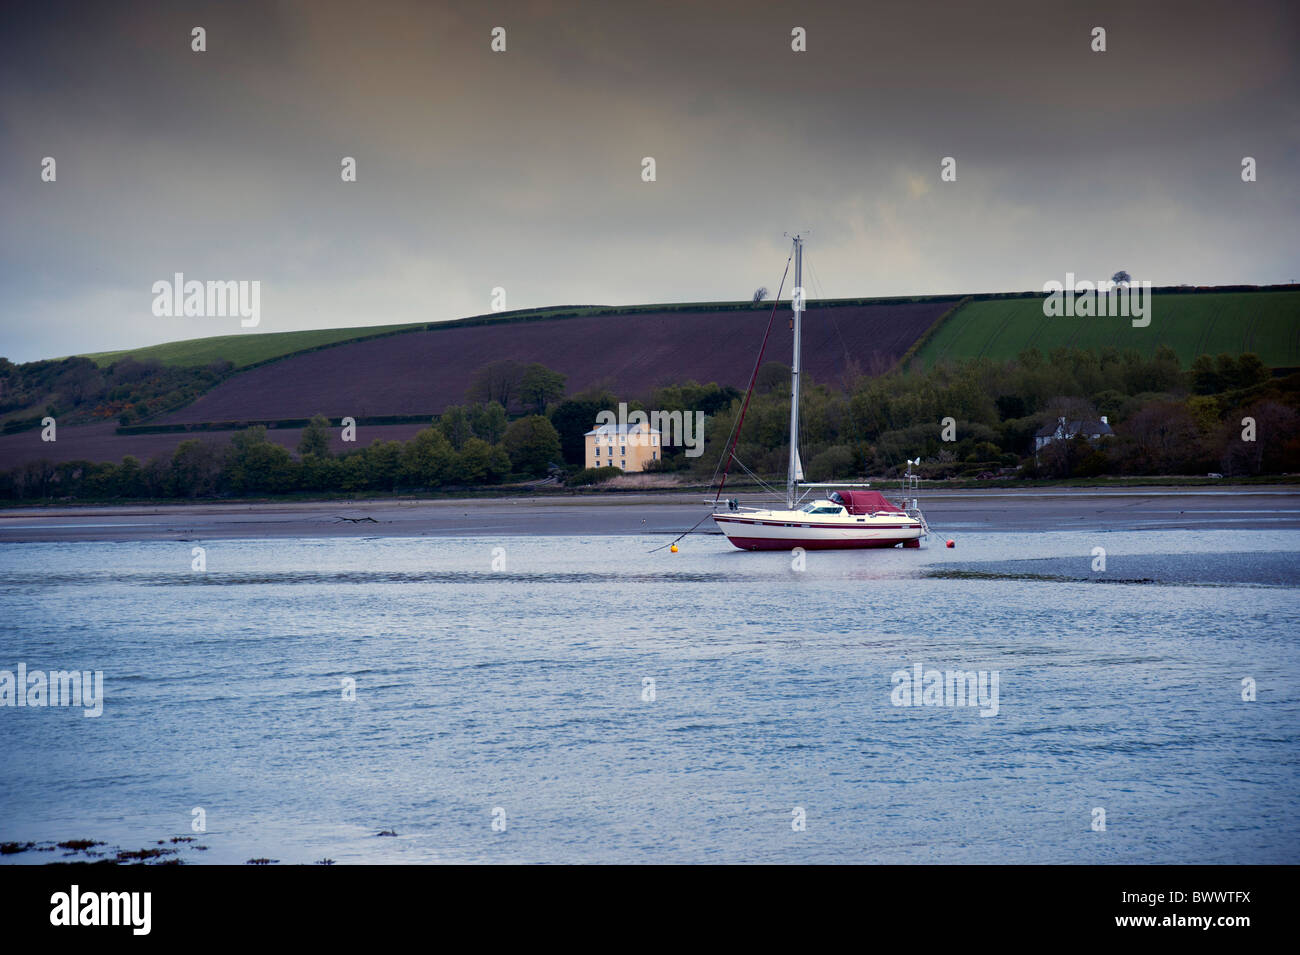 La location d'un bateau à voile dans l'estuaire, juste à la sortie st. L'ouest du pays de Galles cardigan Dogmaels Banque D'Images